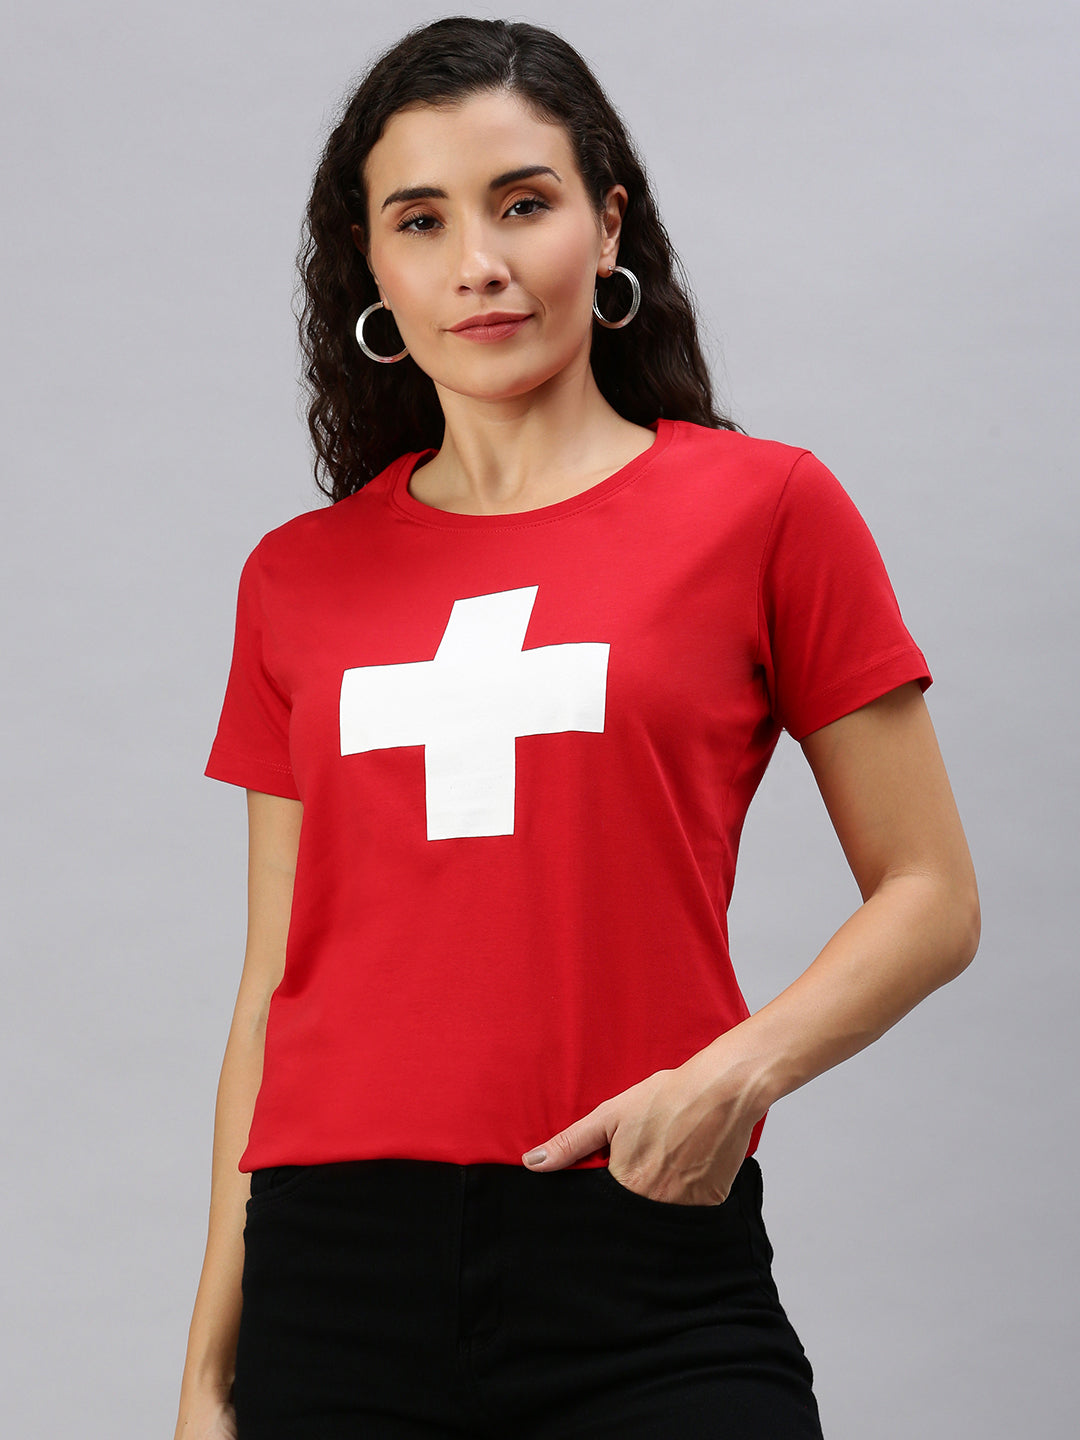 Helvetica T-Shirt Ladies V-Neck 2035